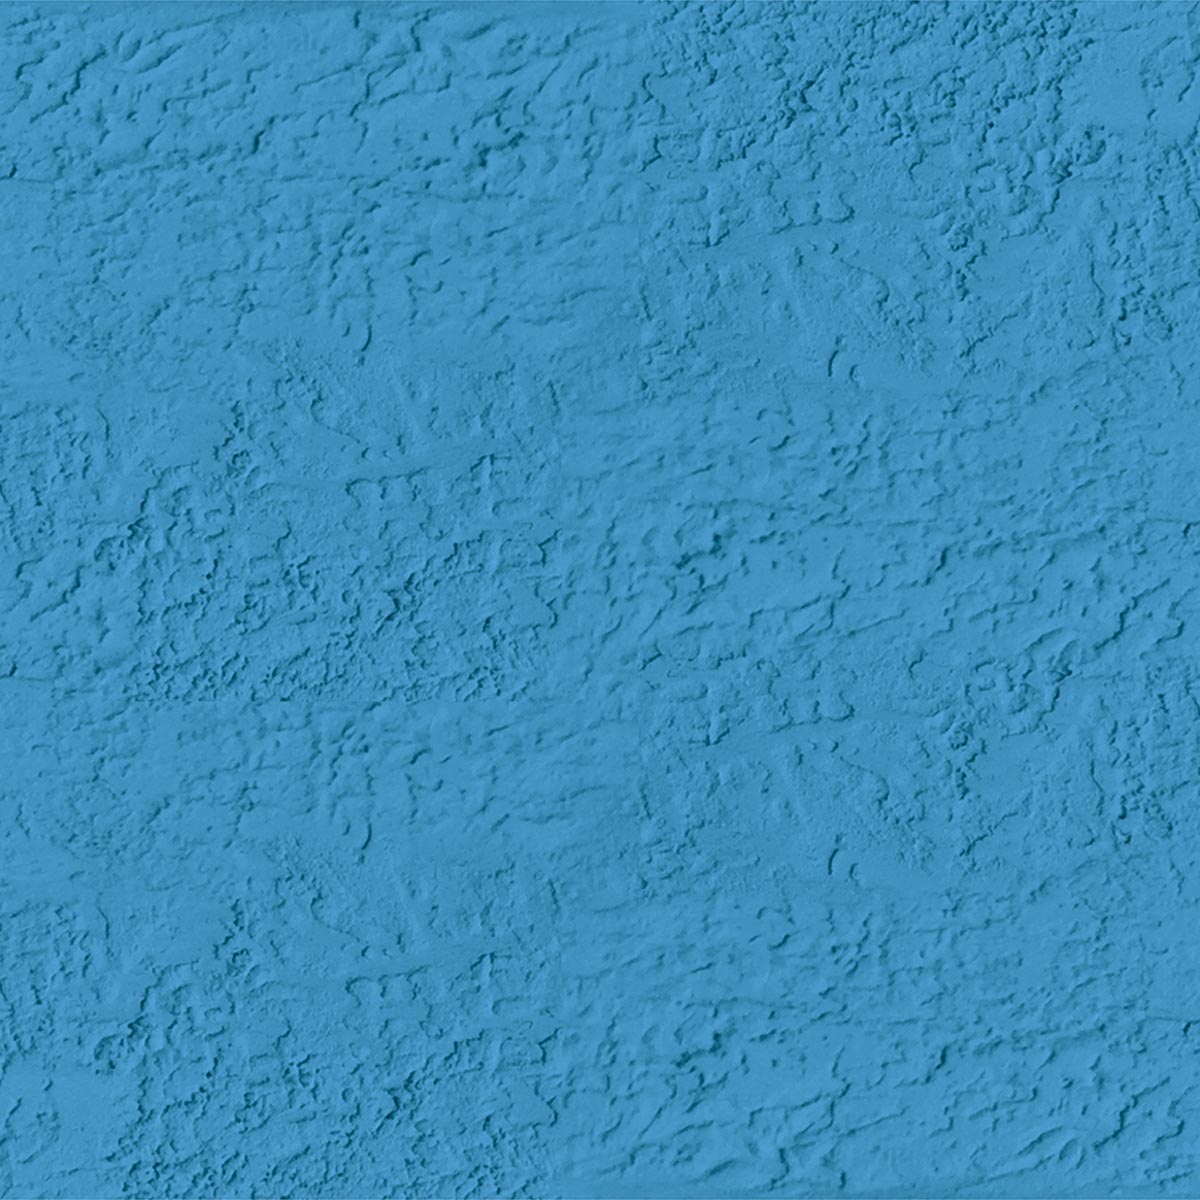 FolkArt ® Coastal™ Texture Paint - Largo Blue, 8 oz. - 6515